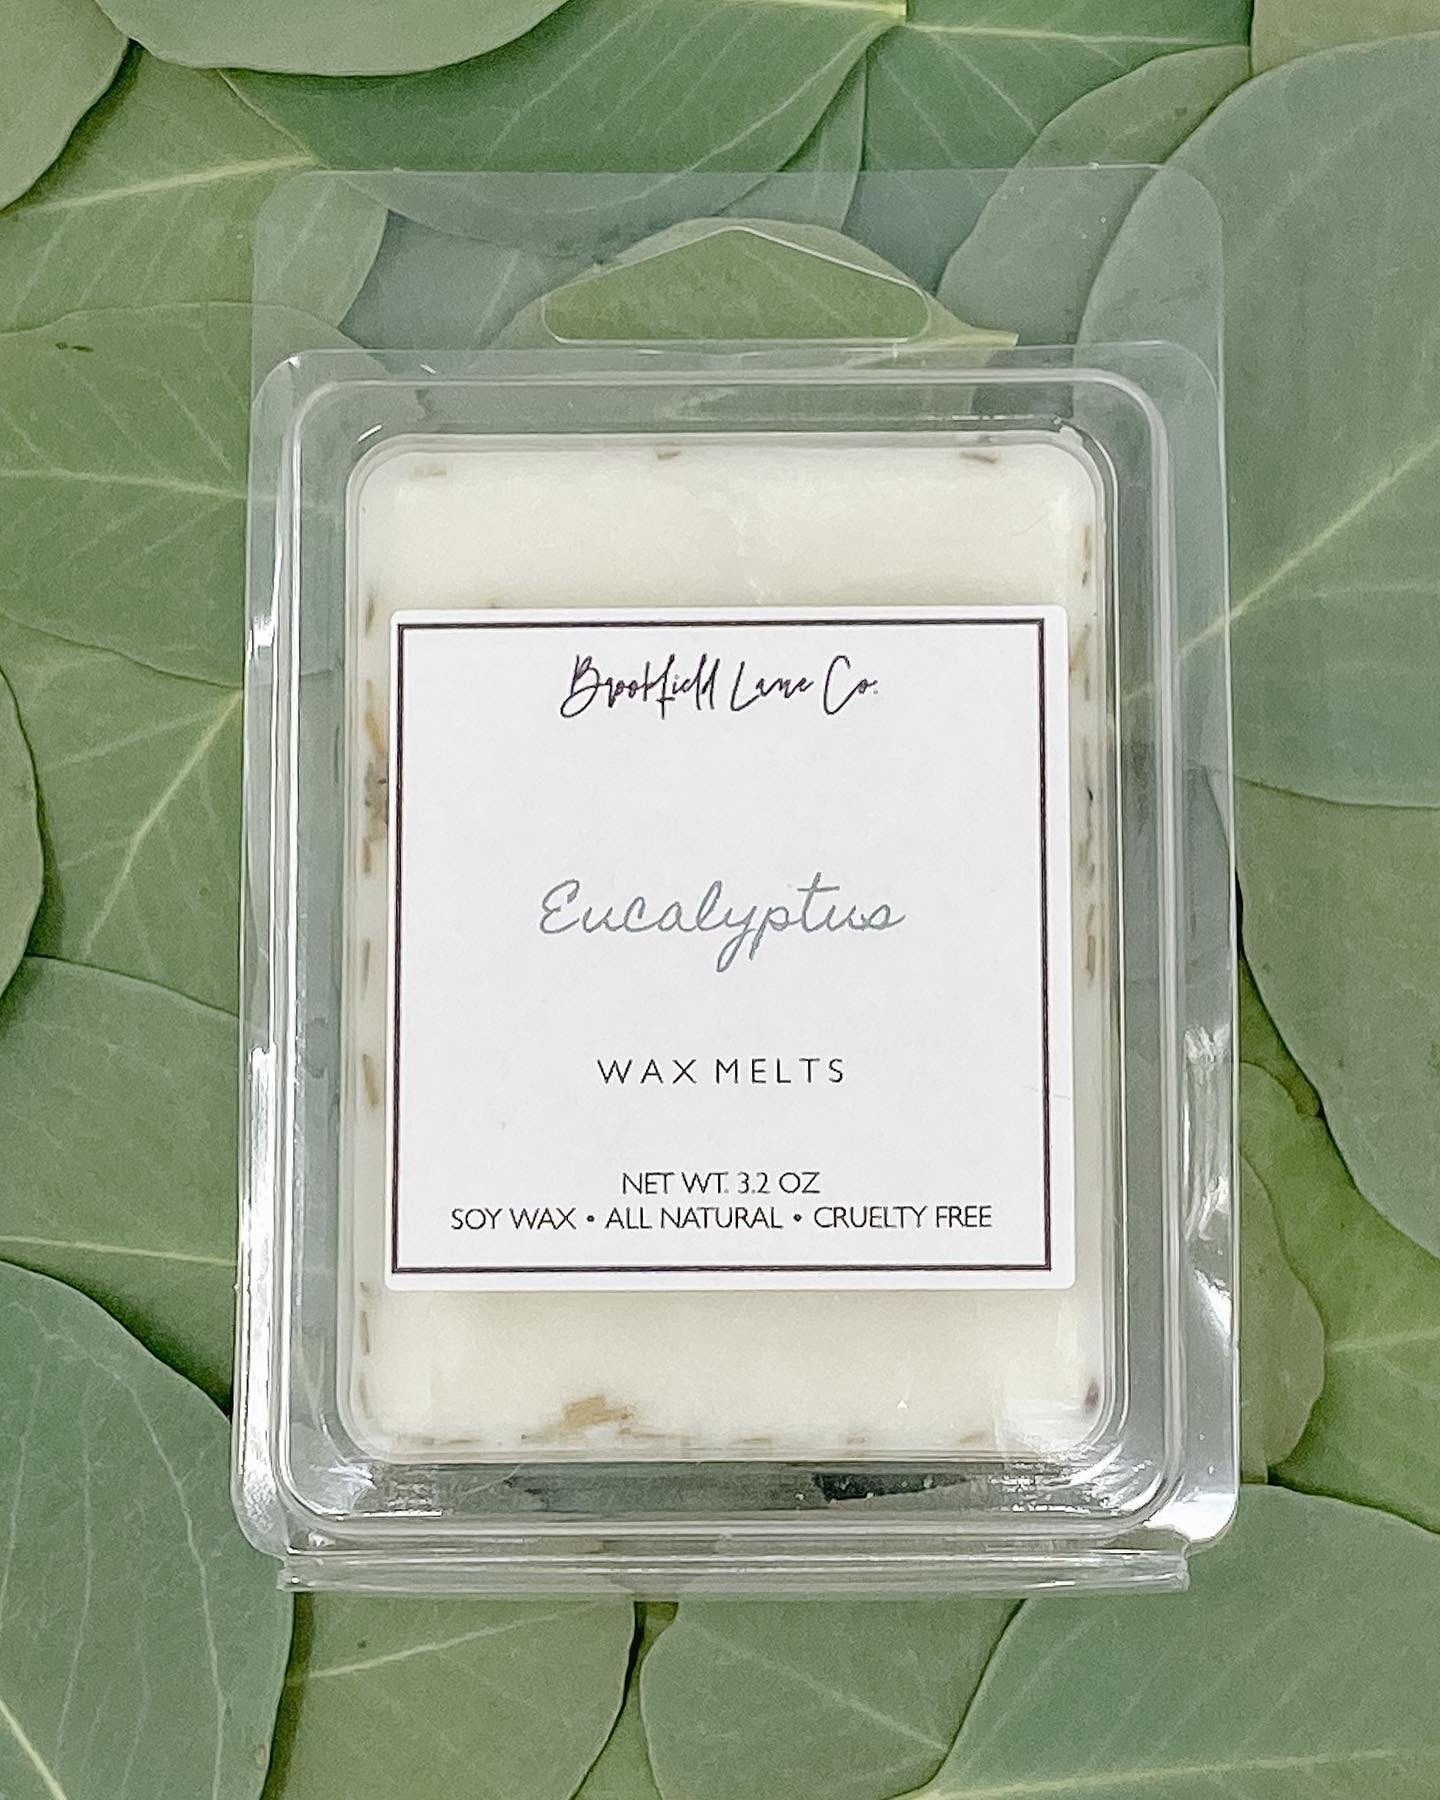 Eucalyptus Wax Melts